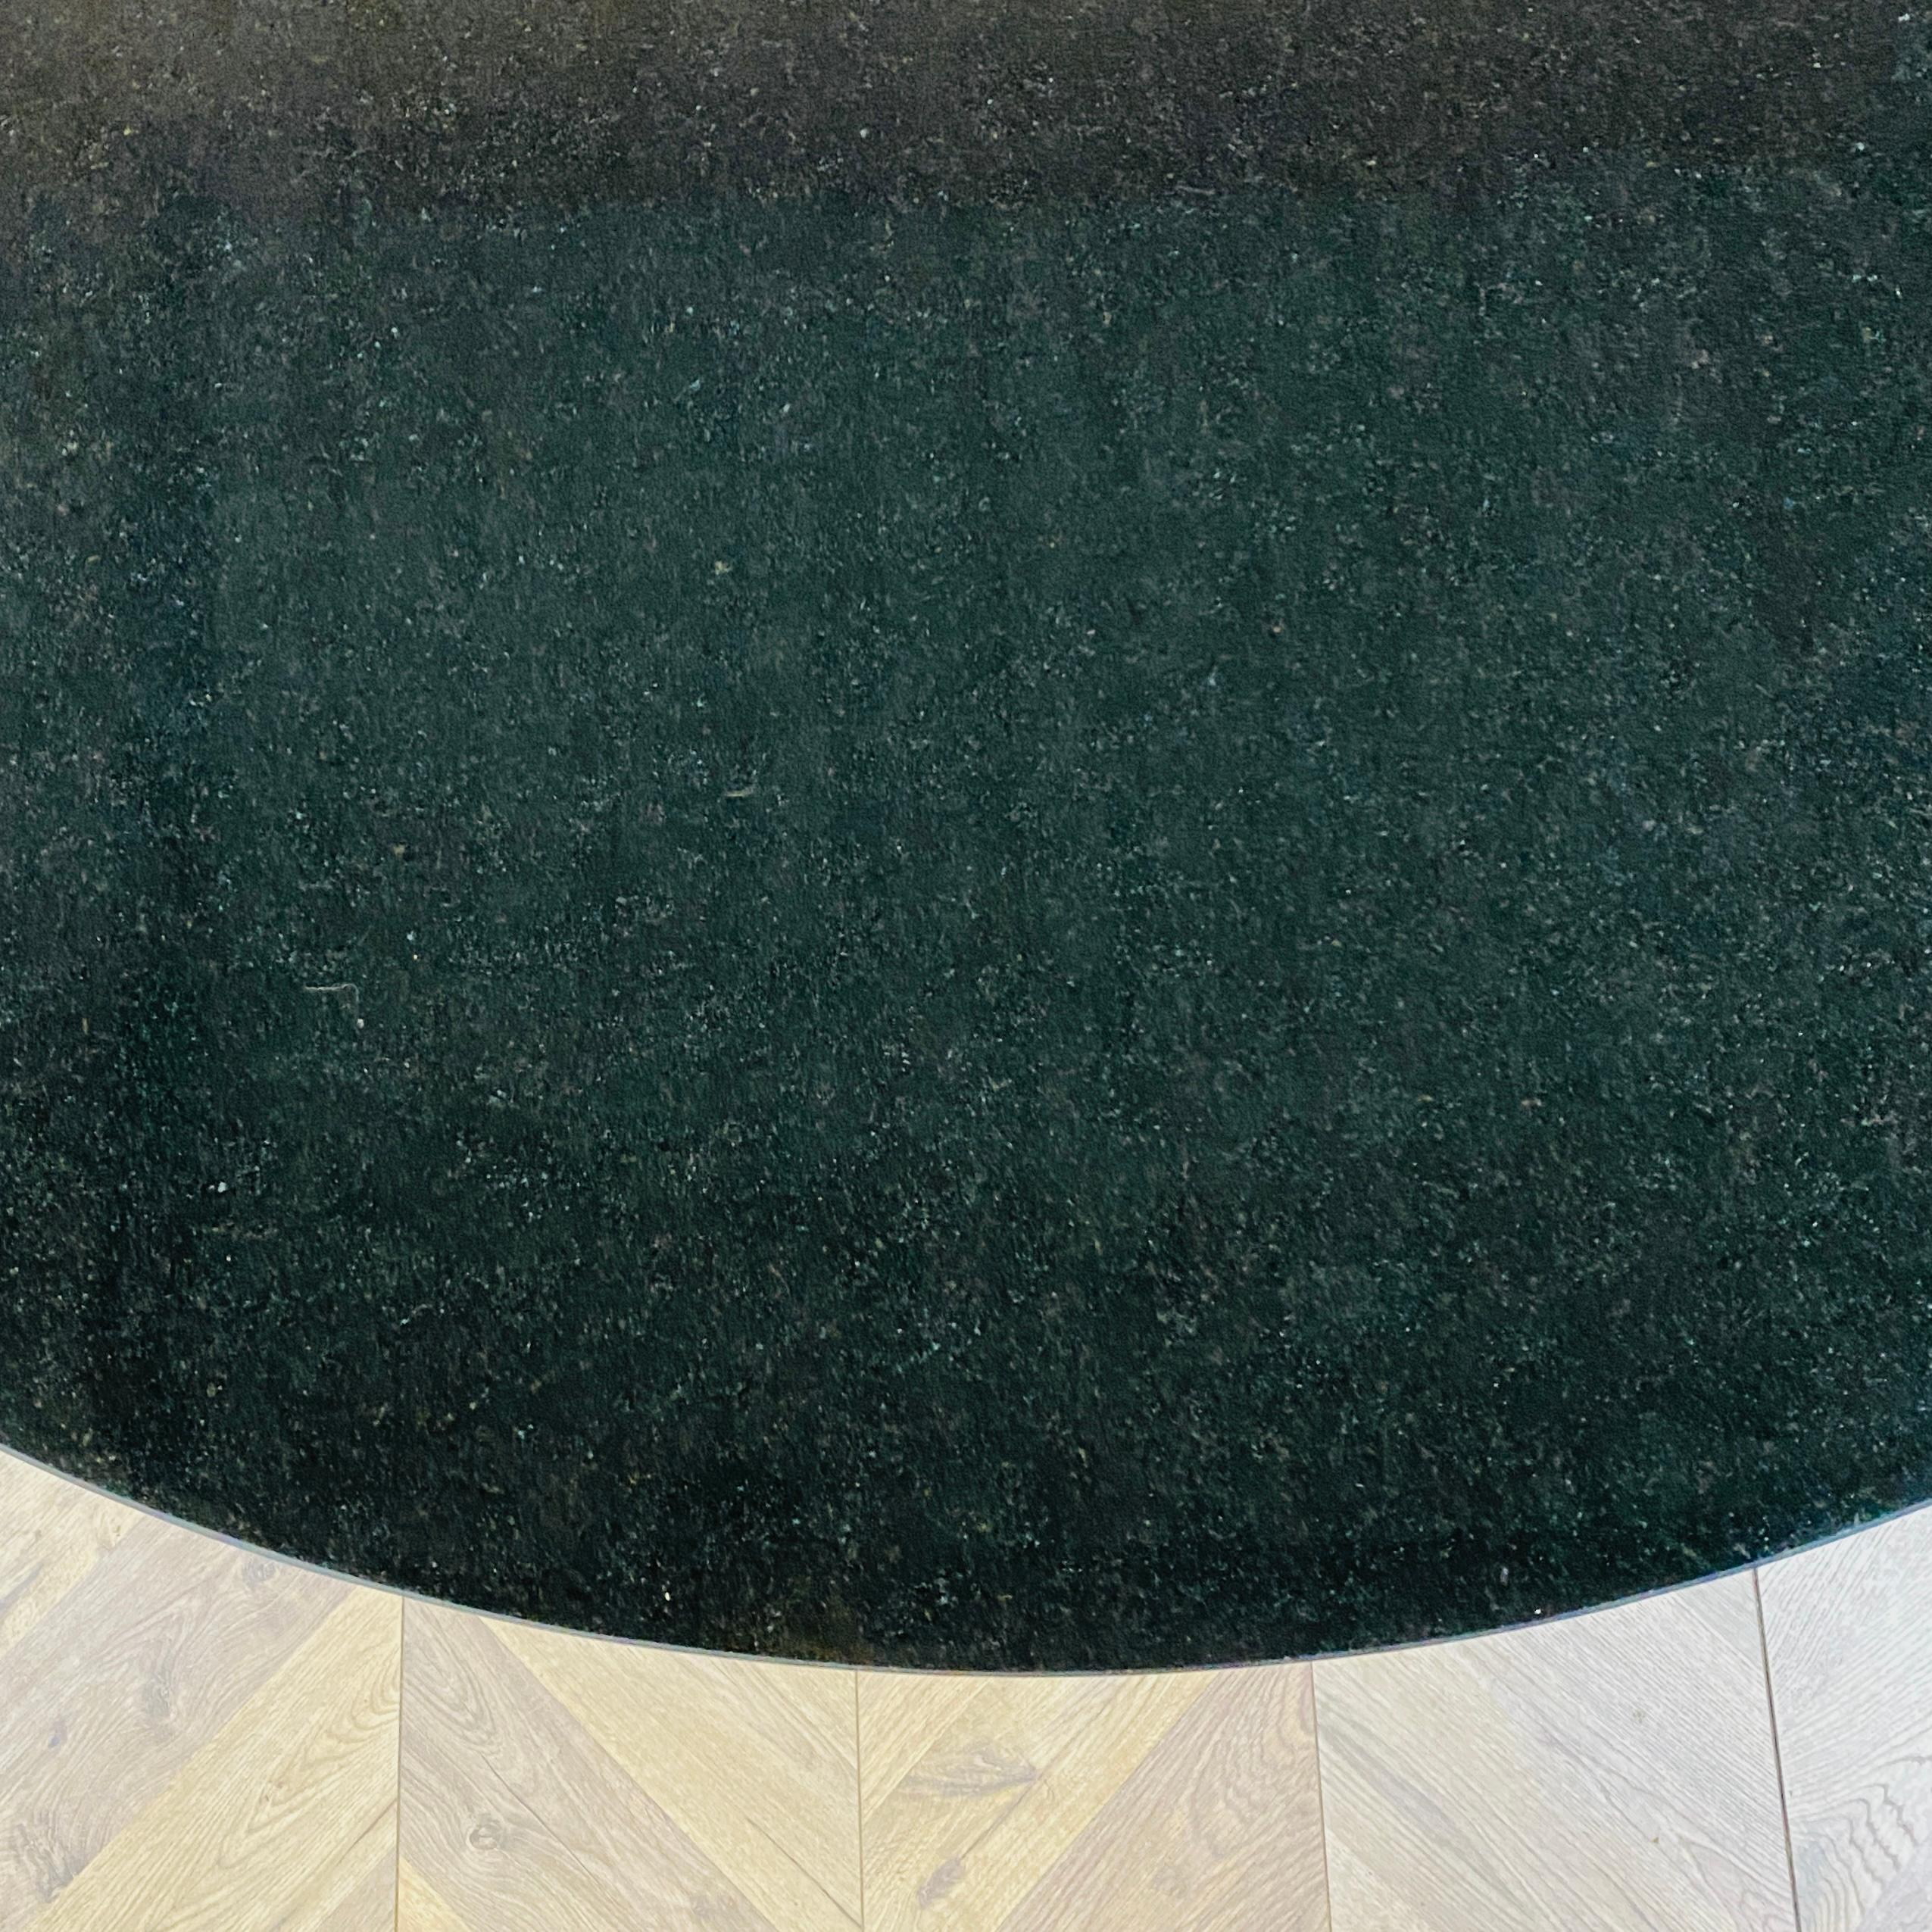 Une belle table à manger vintage, ronde en granit et chrome, dans le style de la table Tulip d'Eero Saarinen, vers les années 1970.

Le plateau de la table est extrêmement lourd et fabriqué en granit noir.

La table est en excellent état, avec